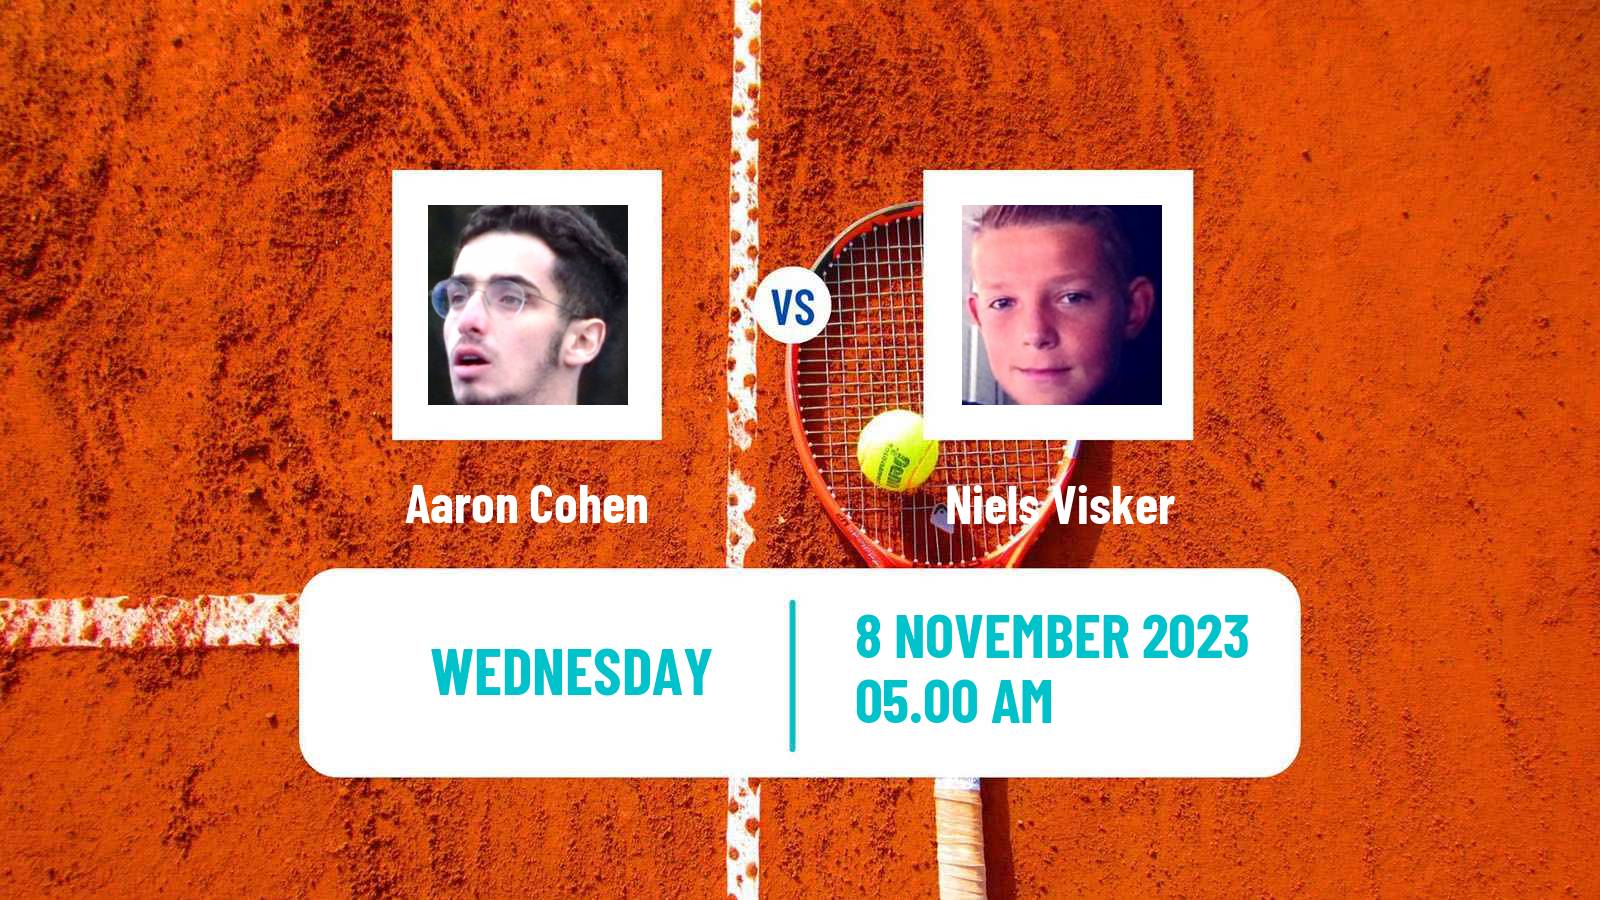 Tennis ITF M25 Heraklion 2 Men Aaron Cohen - Niels Visker